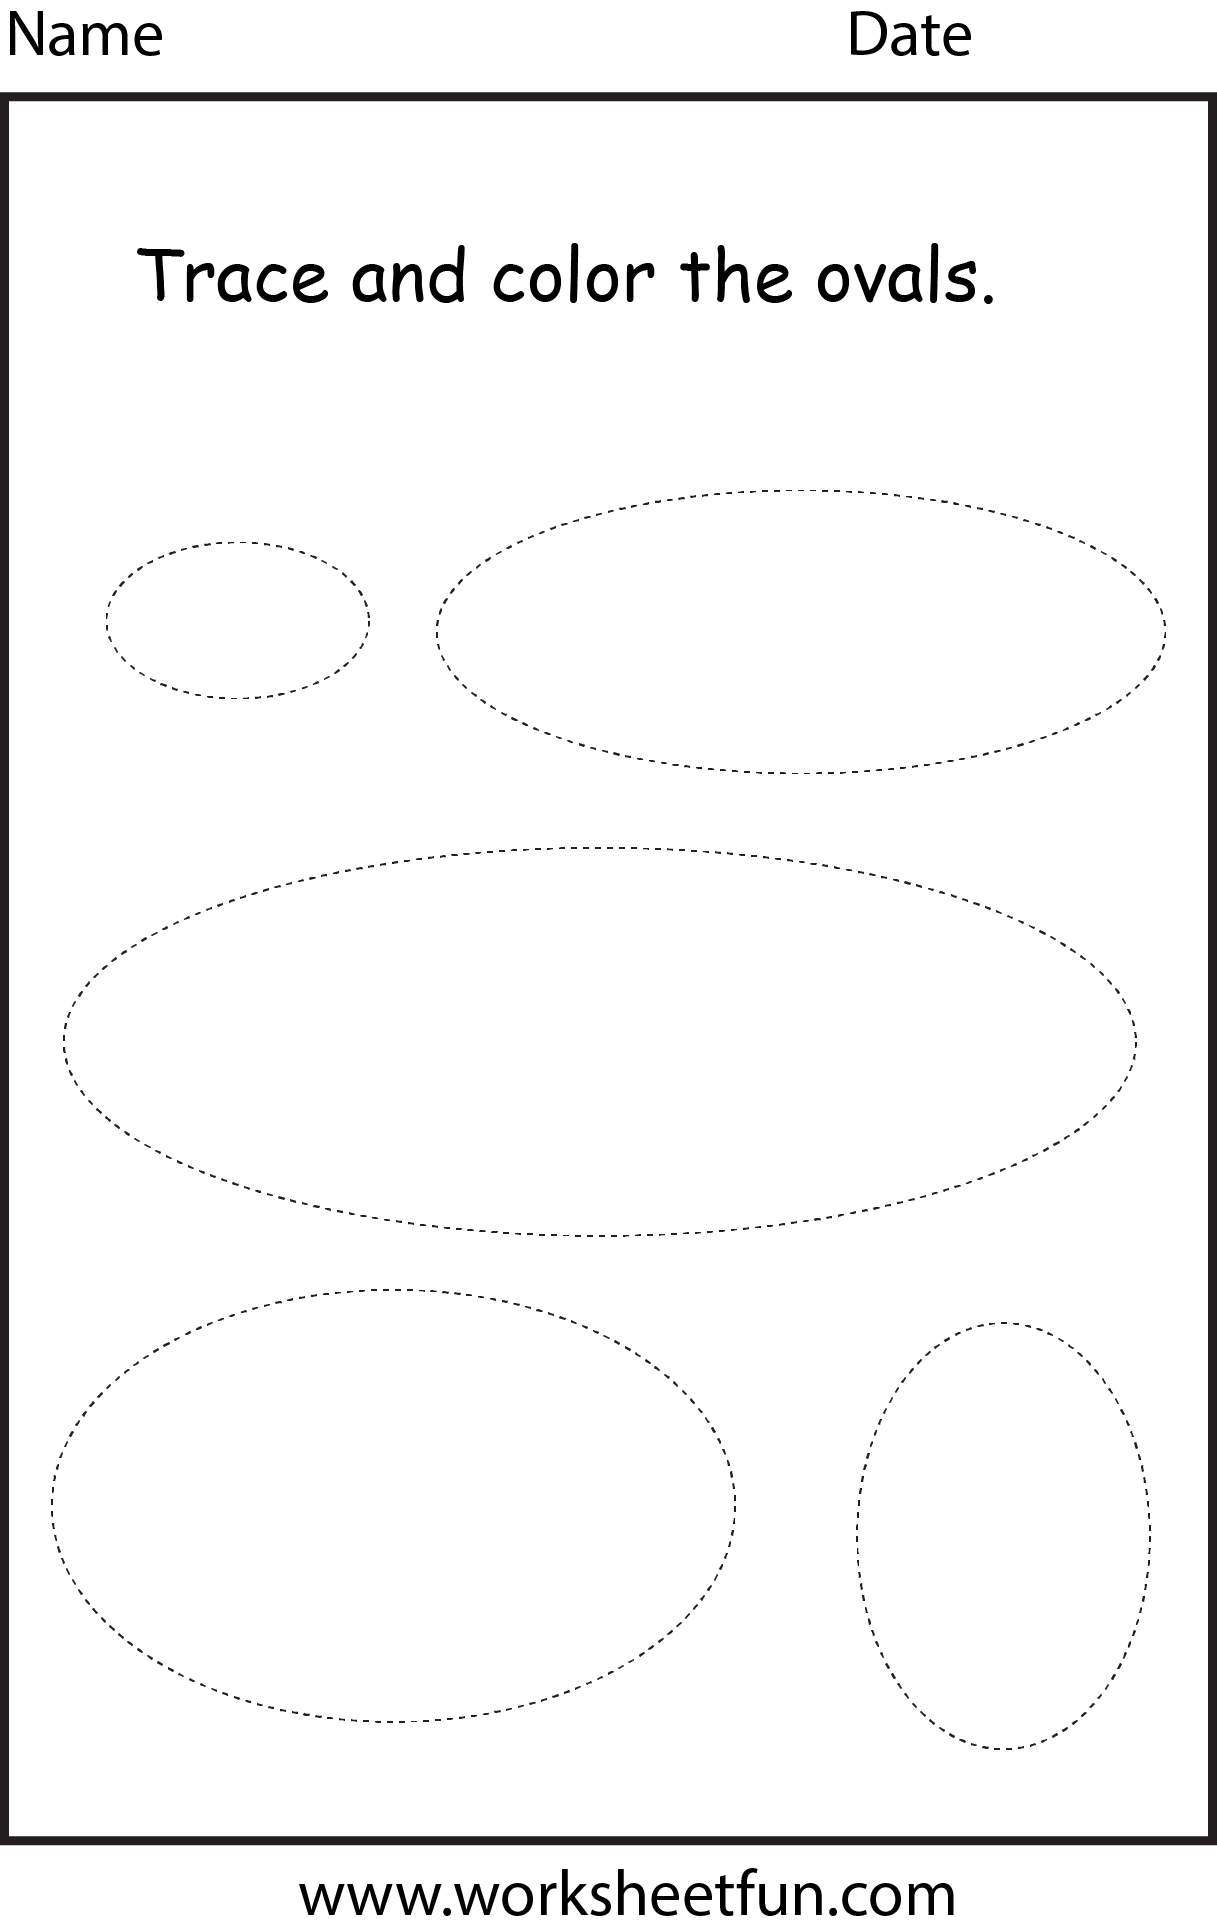 shape-oval-1-worksheet-free-printable-worksheets-worksheetfun